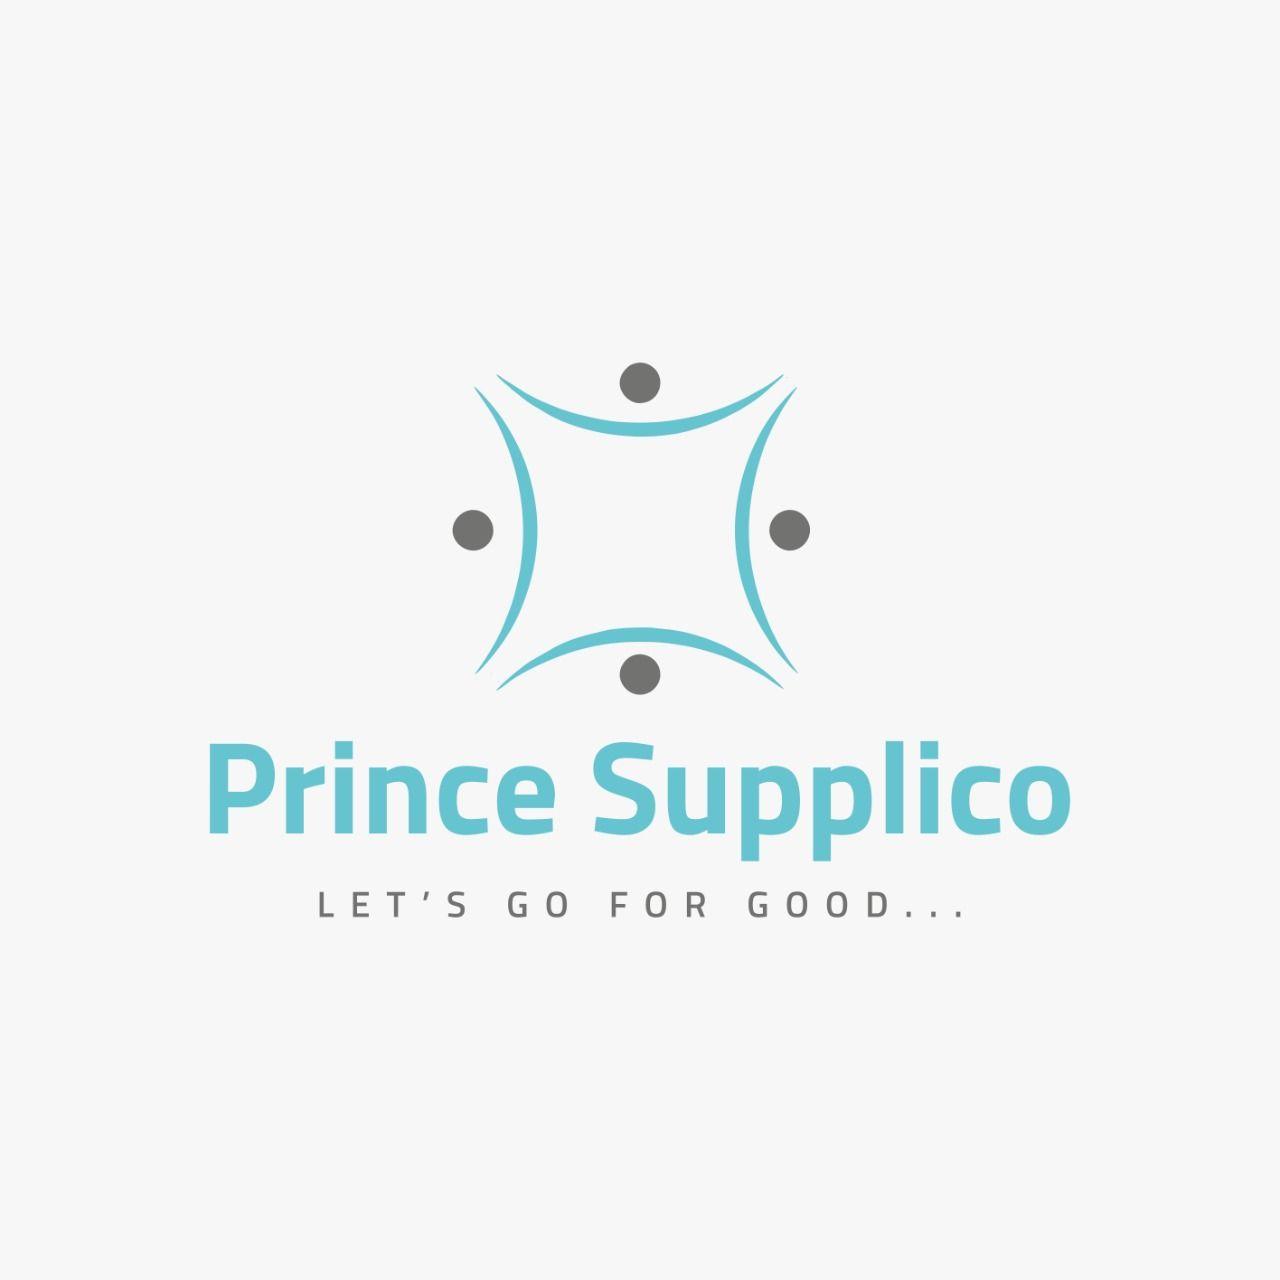 Prince Supplico